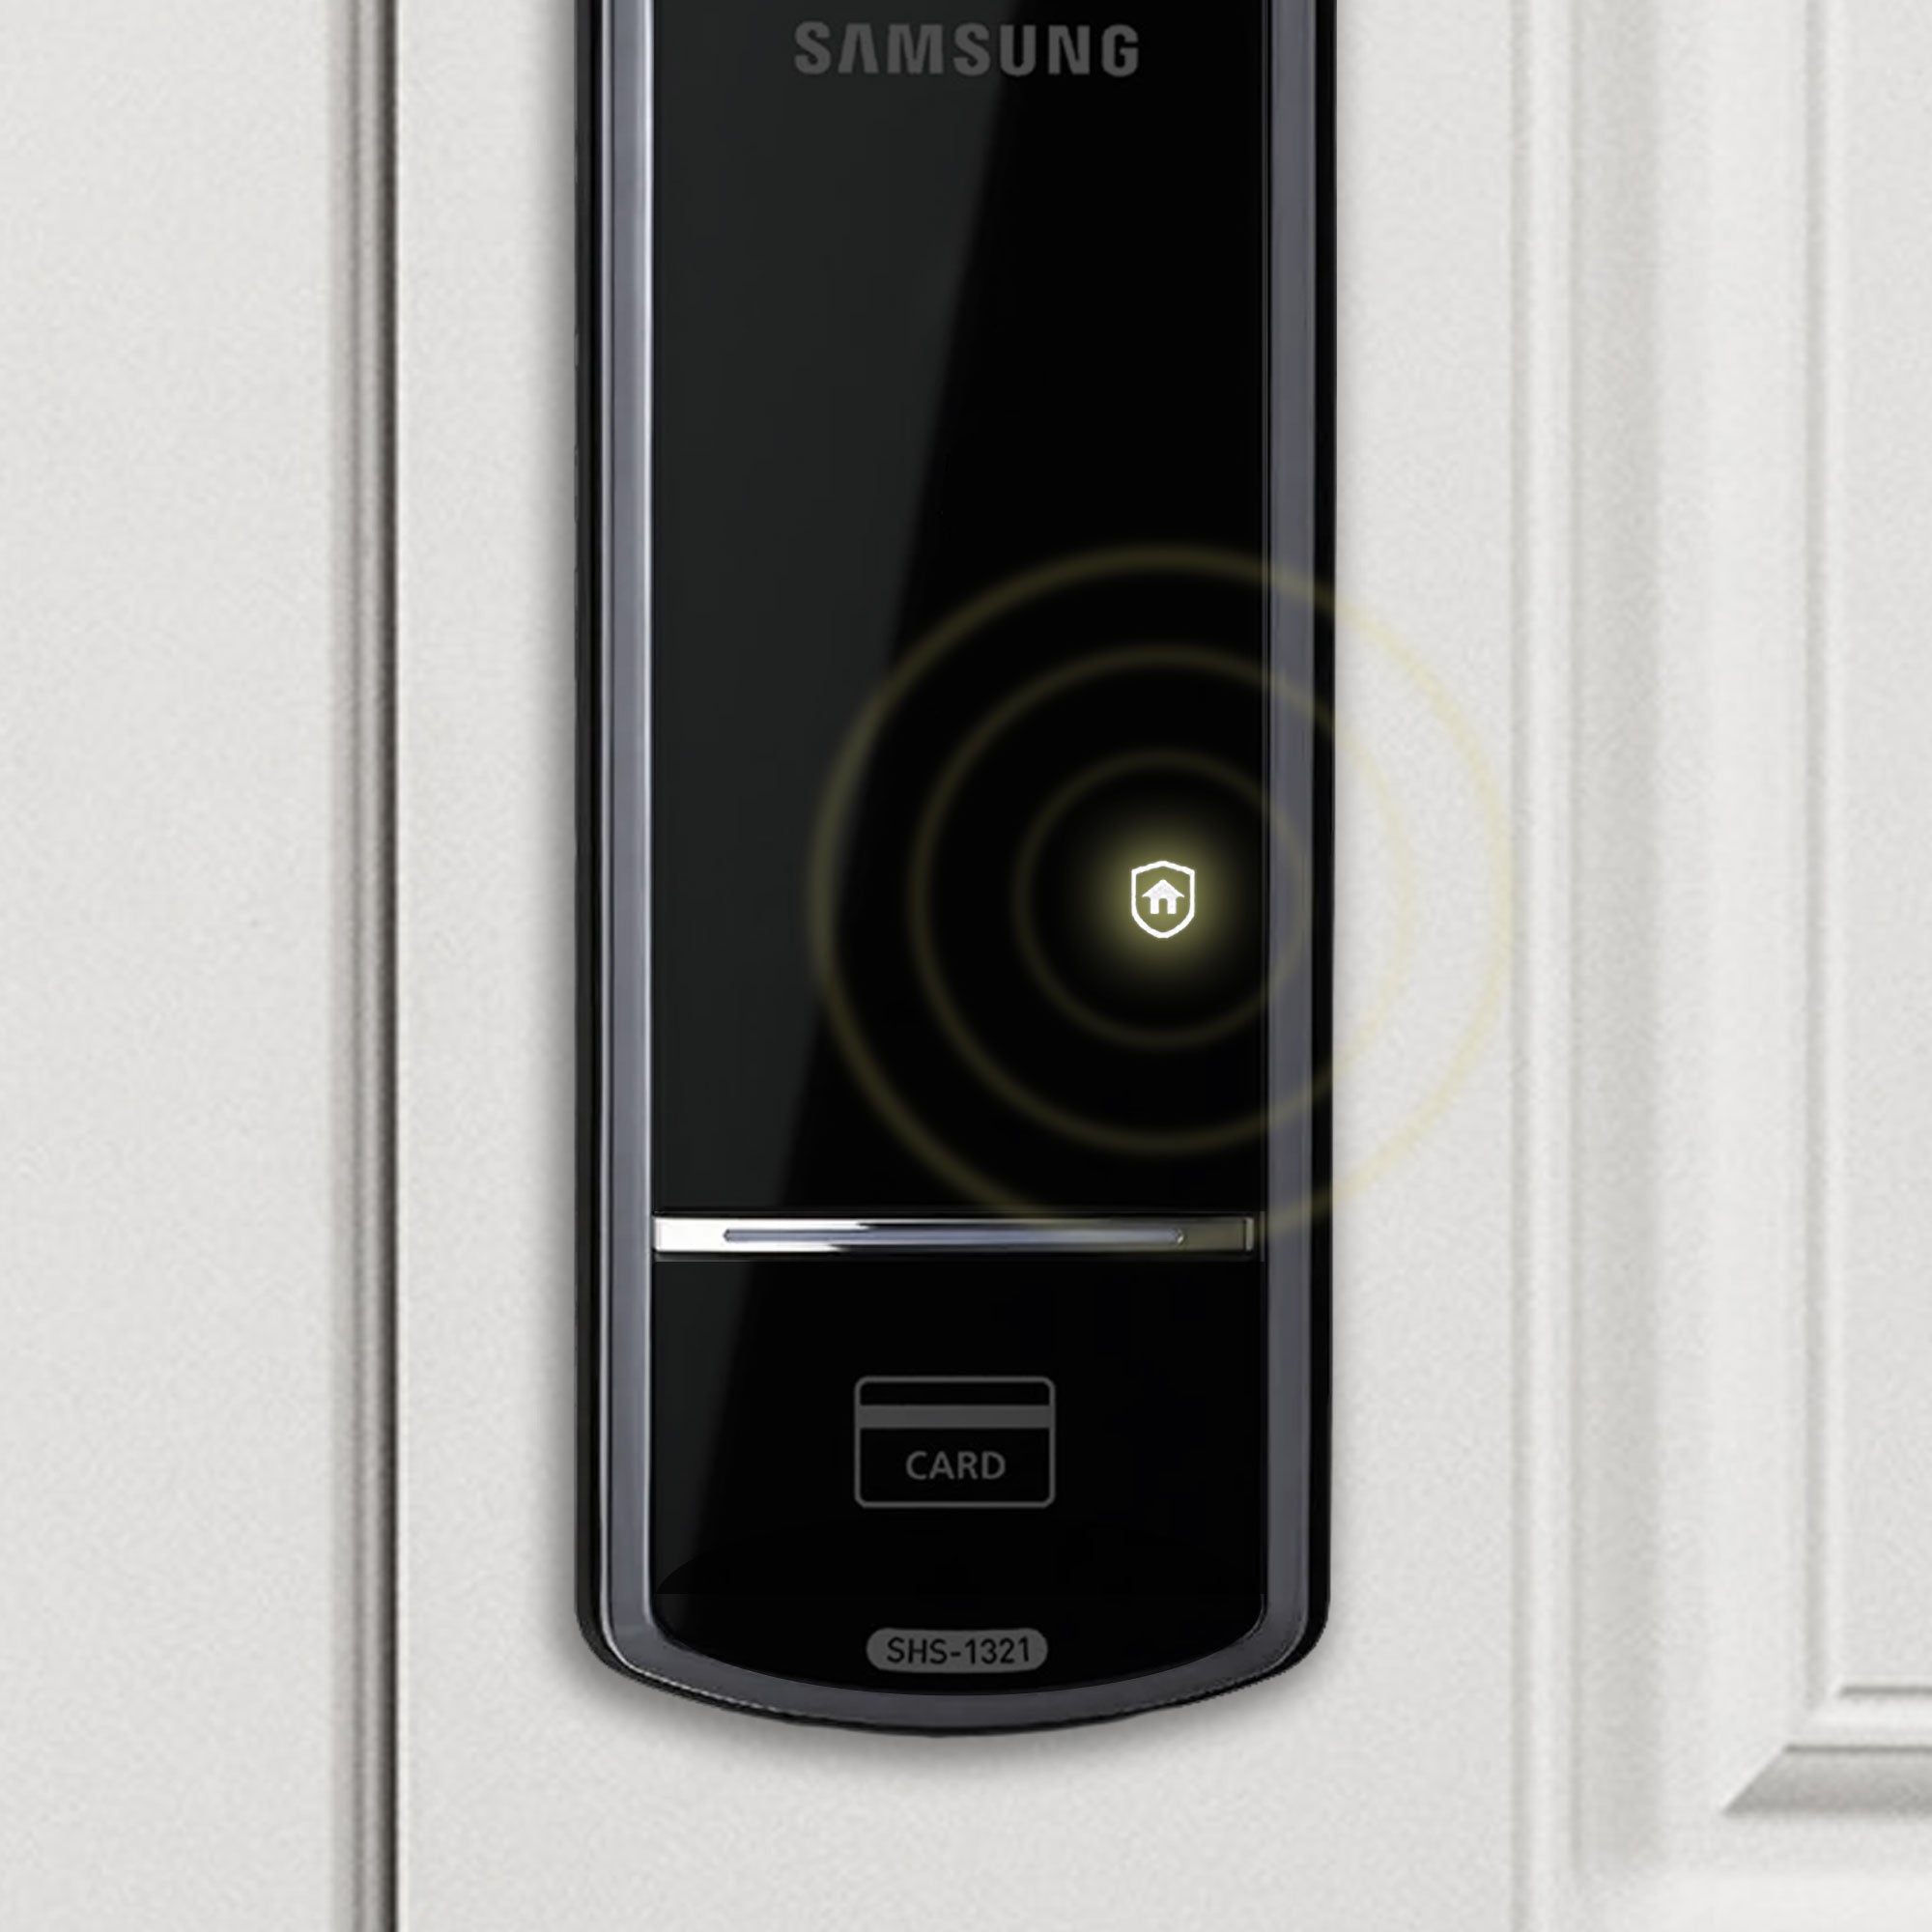 Cerrojo eléctrico Samsung SHS-1321 con Modo «Away» activado en su panel frontal